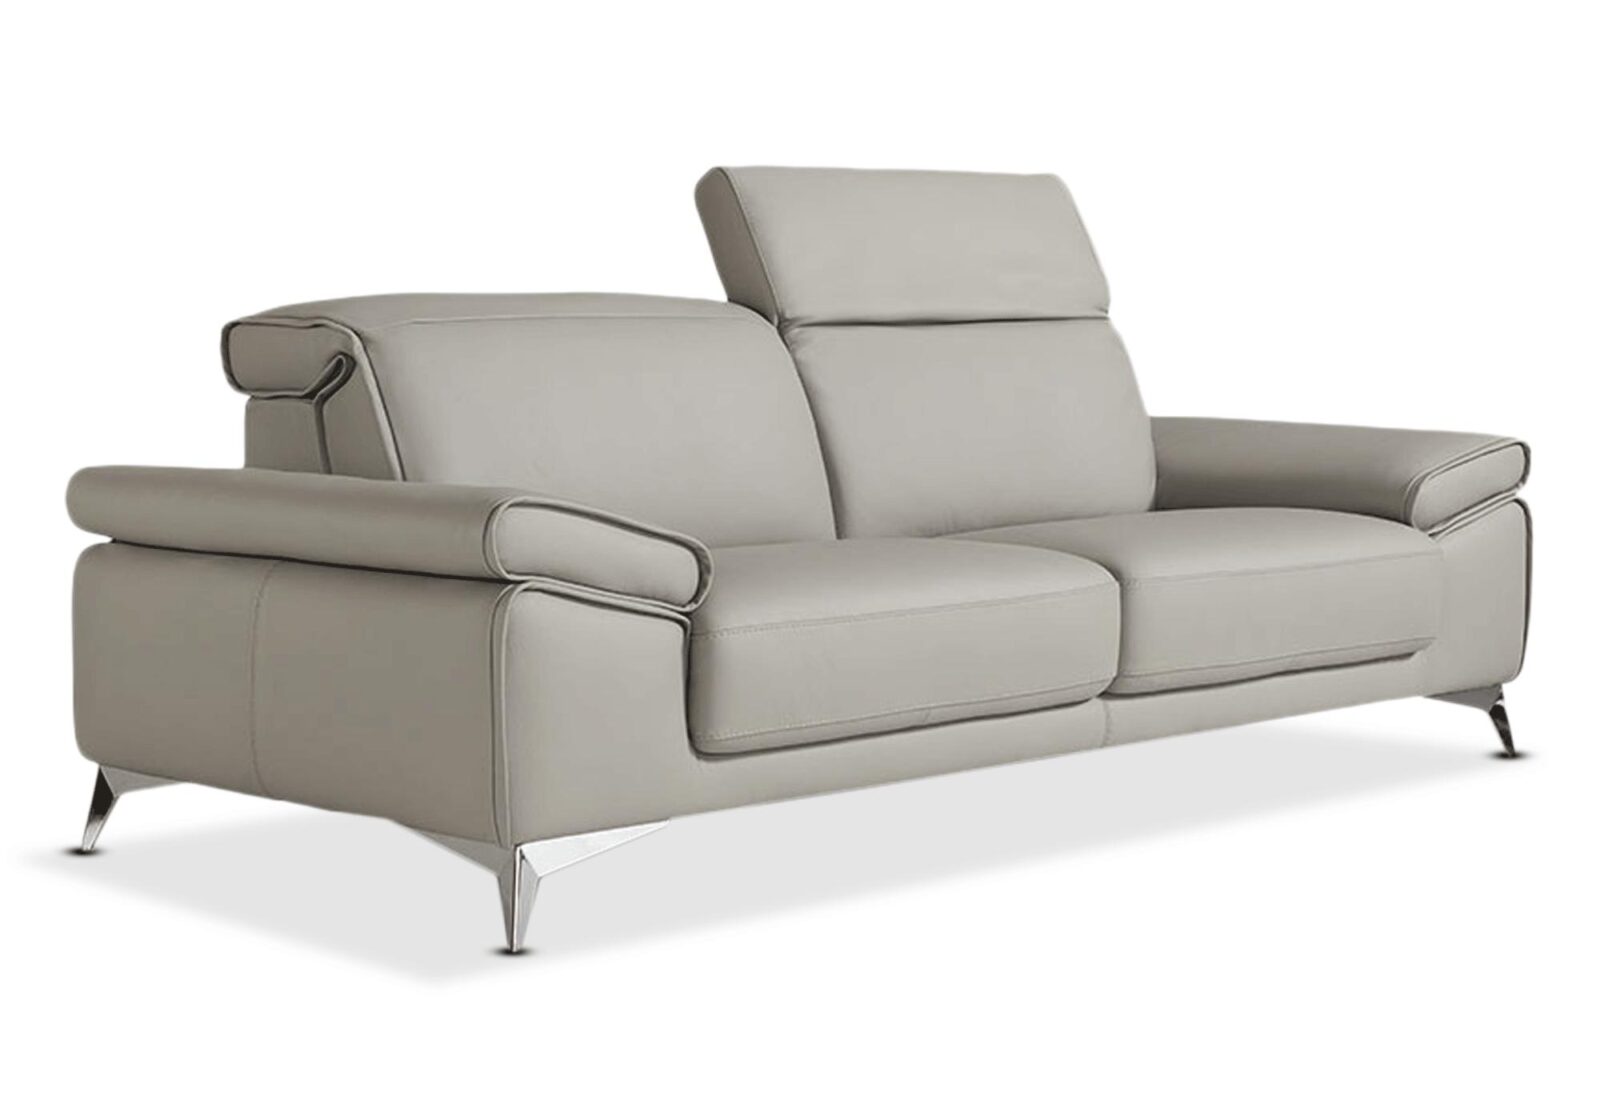 2.5er Sofa Niagara  verstellbare Rückenlehnen. Bezug: Leder. Farbe: Hellgrau. Erhältlich bei Möbel Gallati.